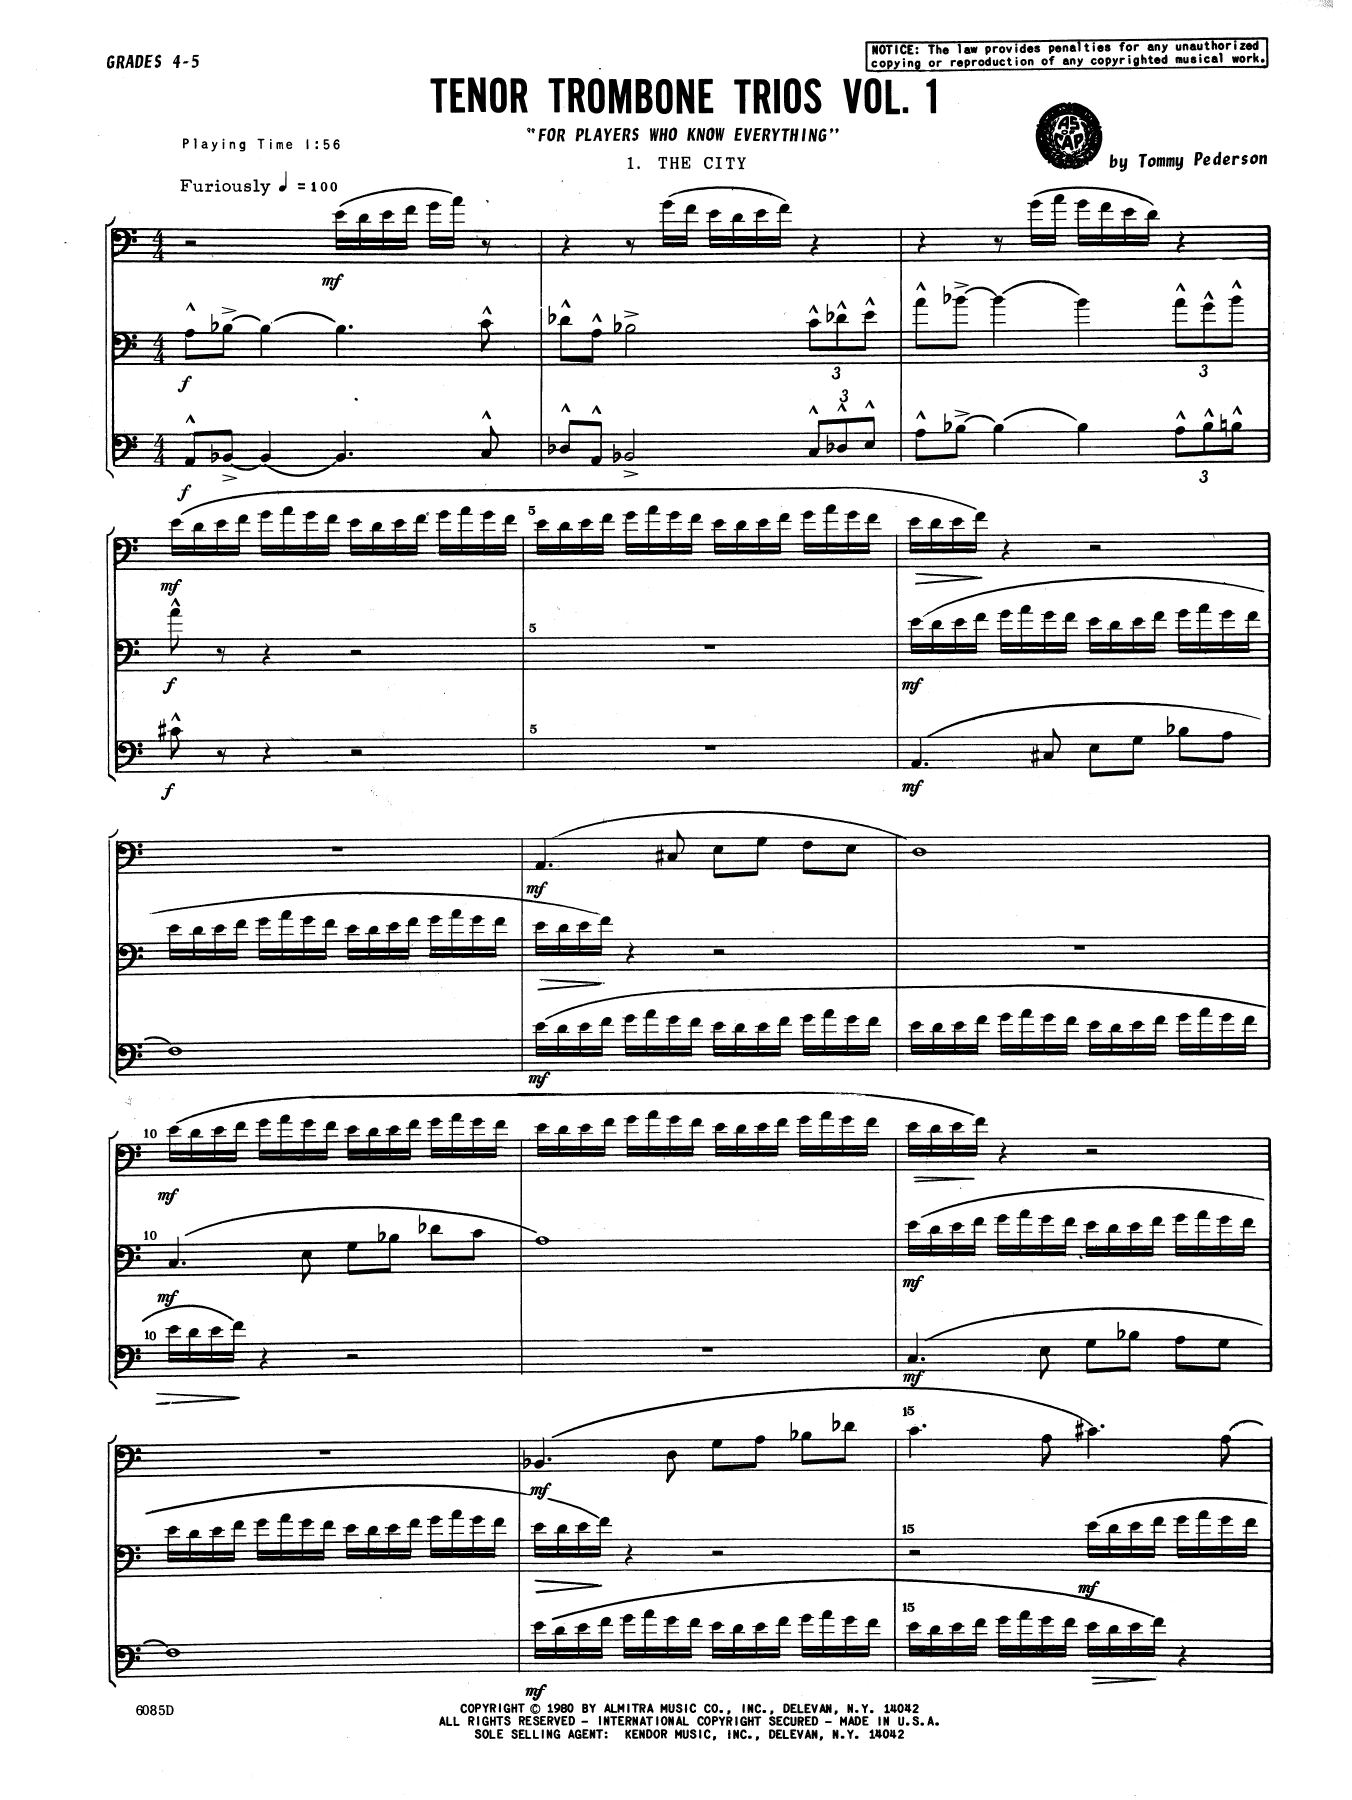 Tenor Trombone Trios, Volume 1 - Full Score (Brass Ensemble) von Tommy Pederson